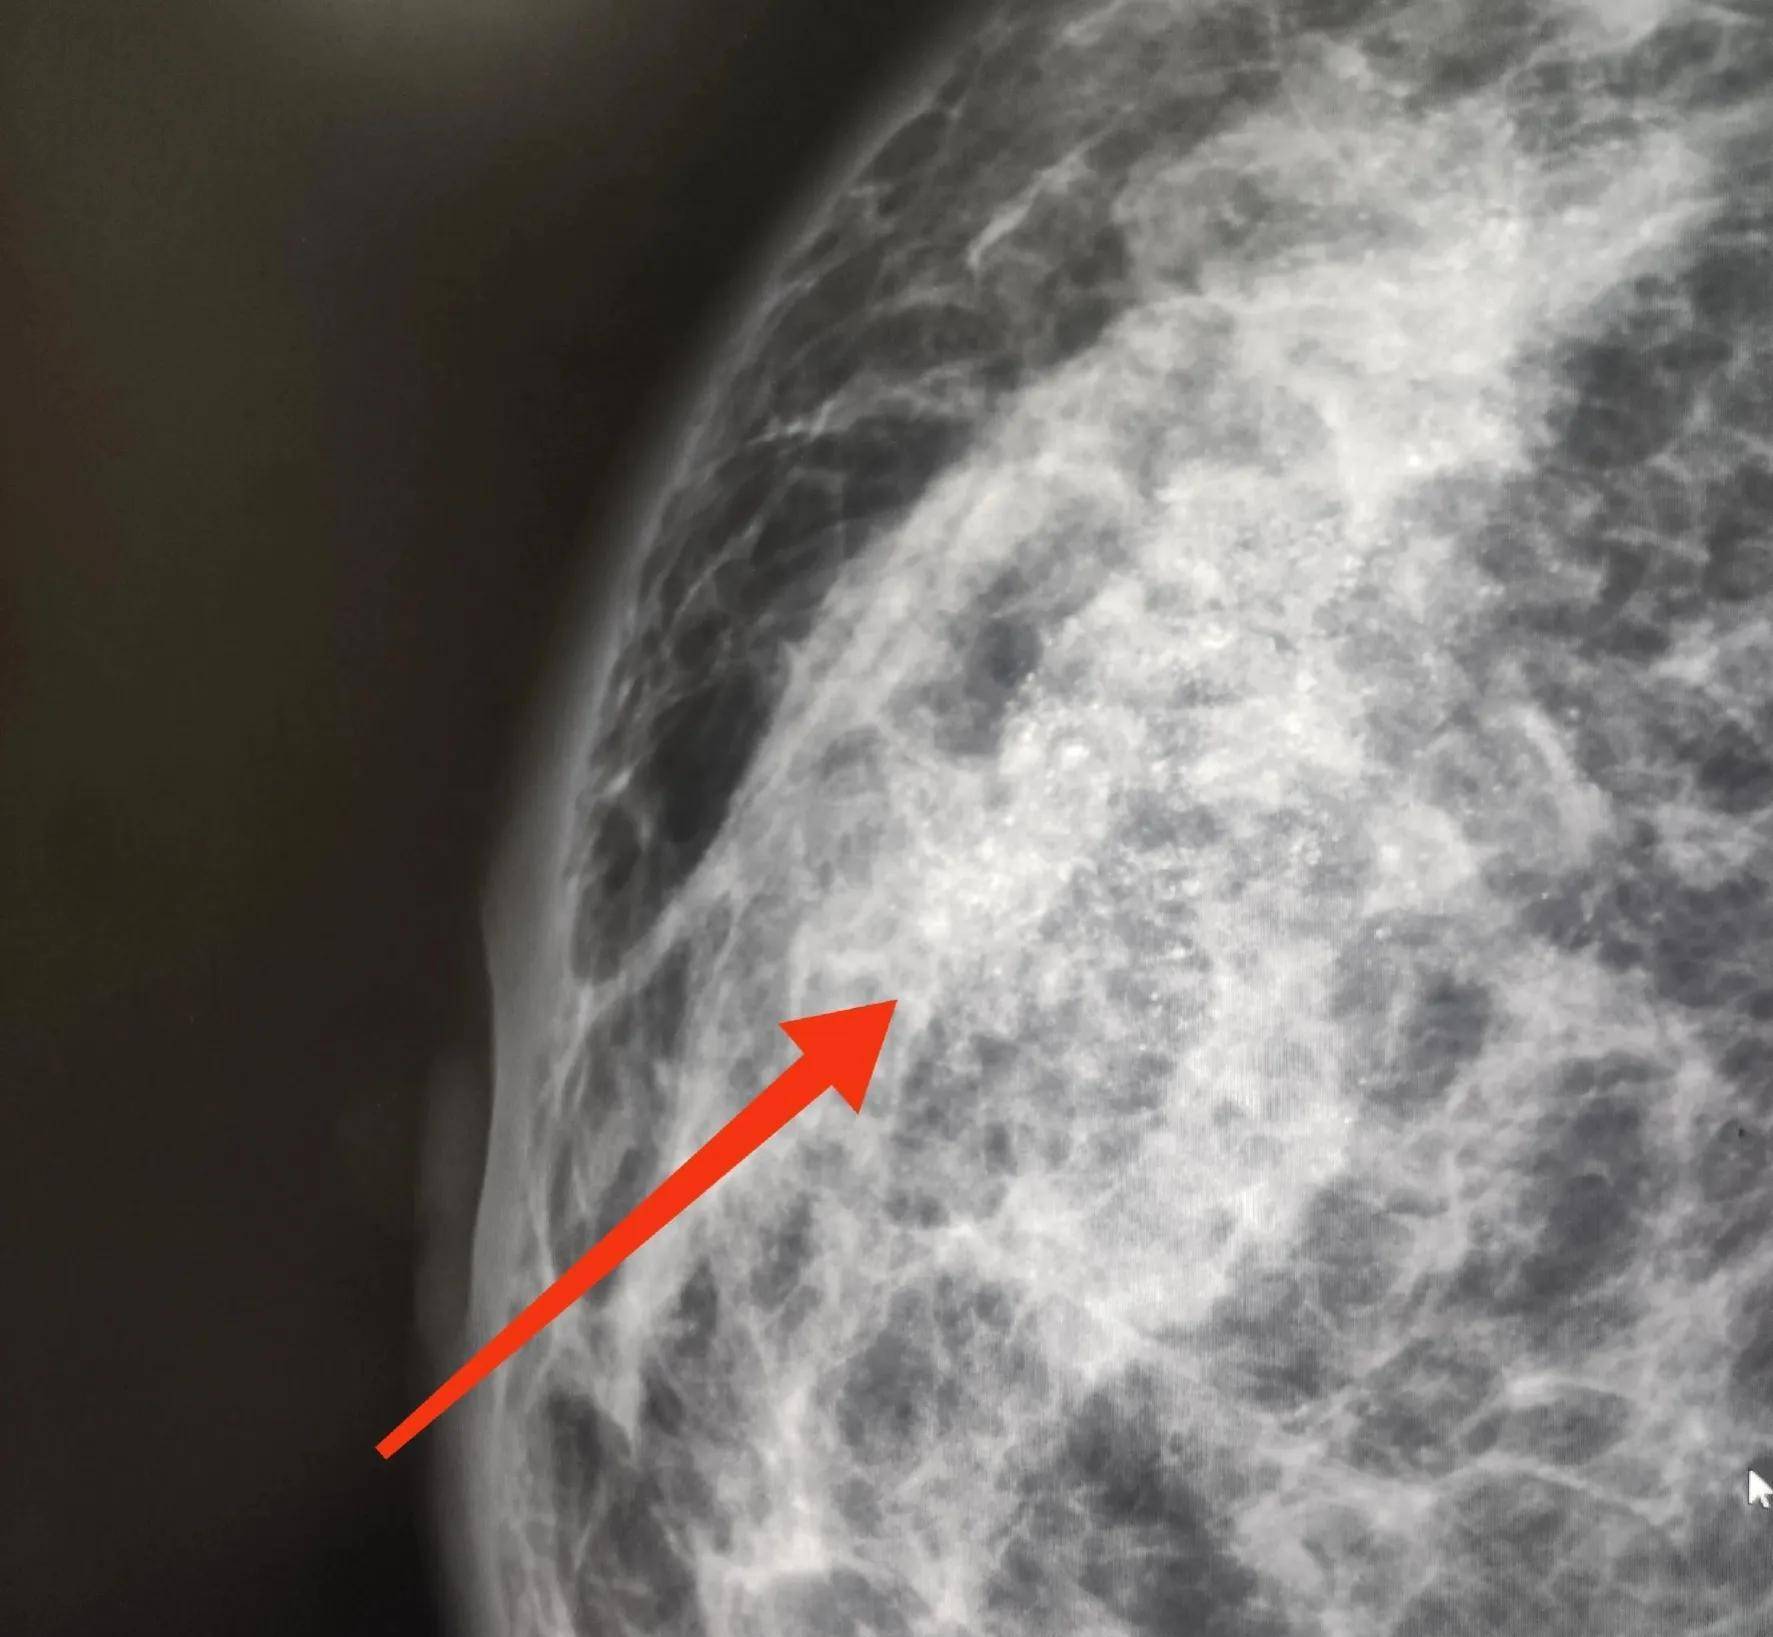 乳腺癌胸壁复发57例图片